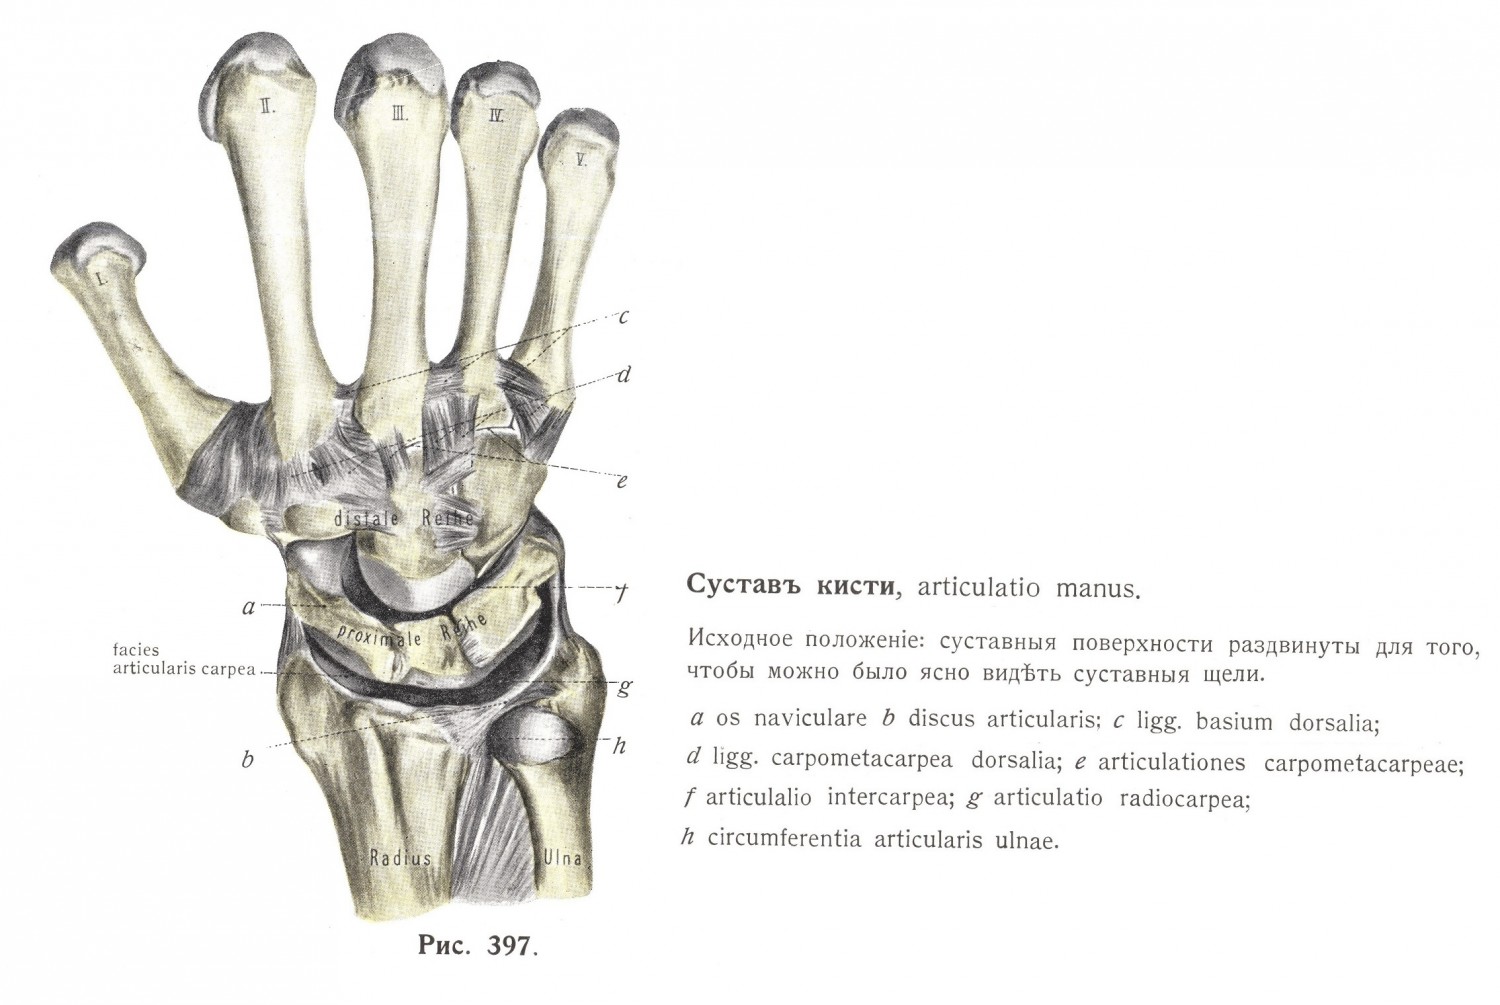 Суставы пальцевъ, articulationes digitorum manus